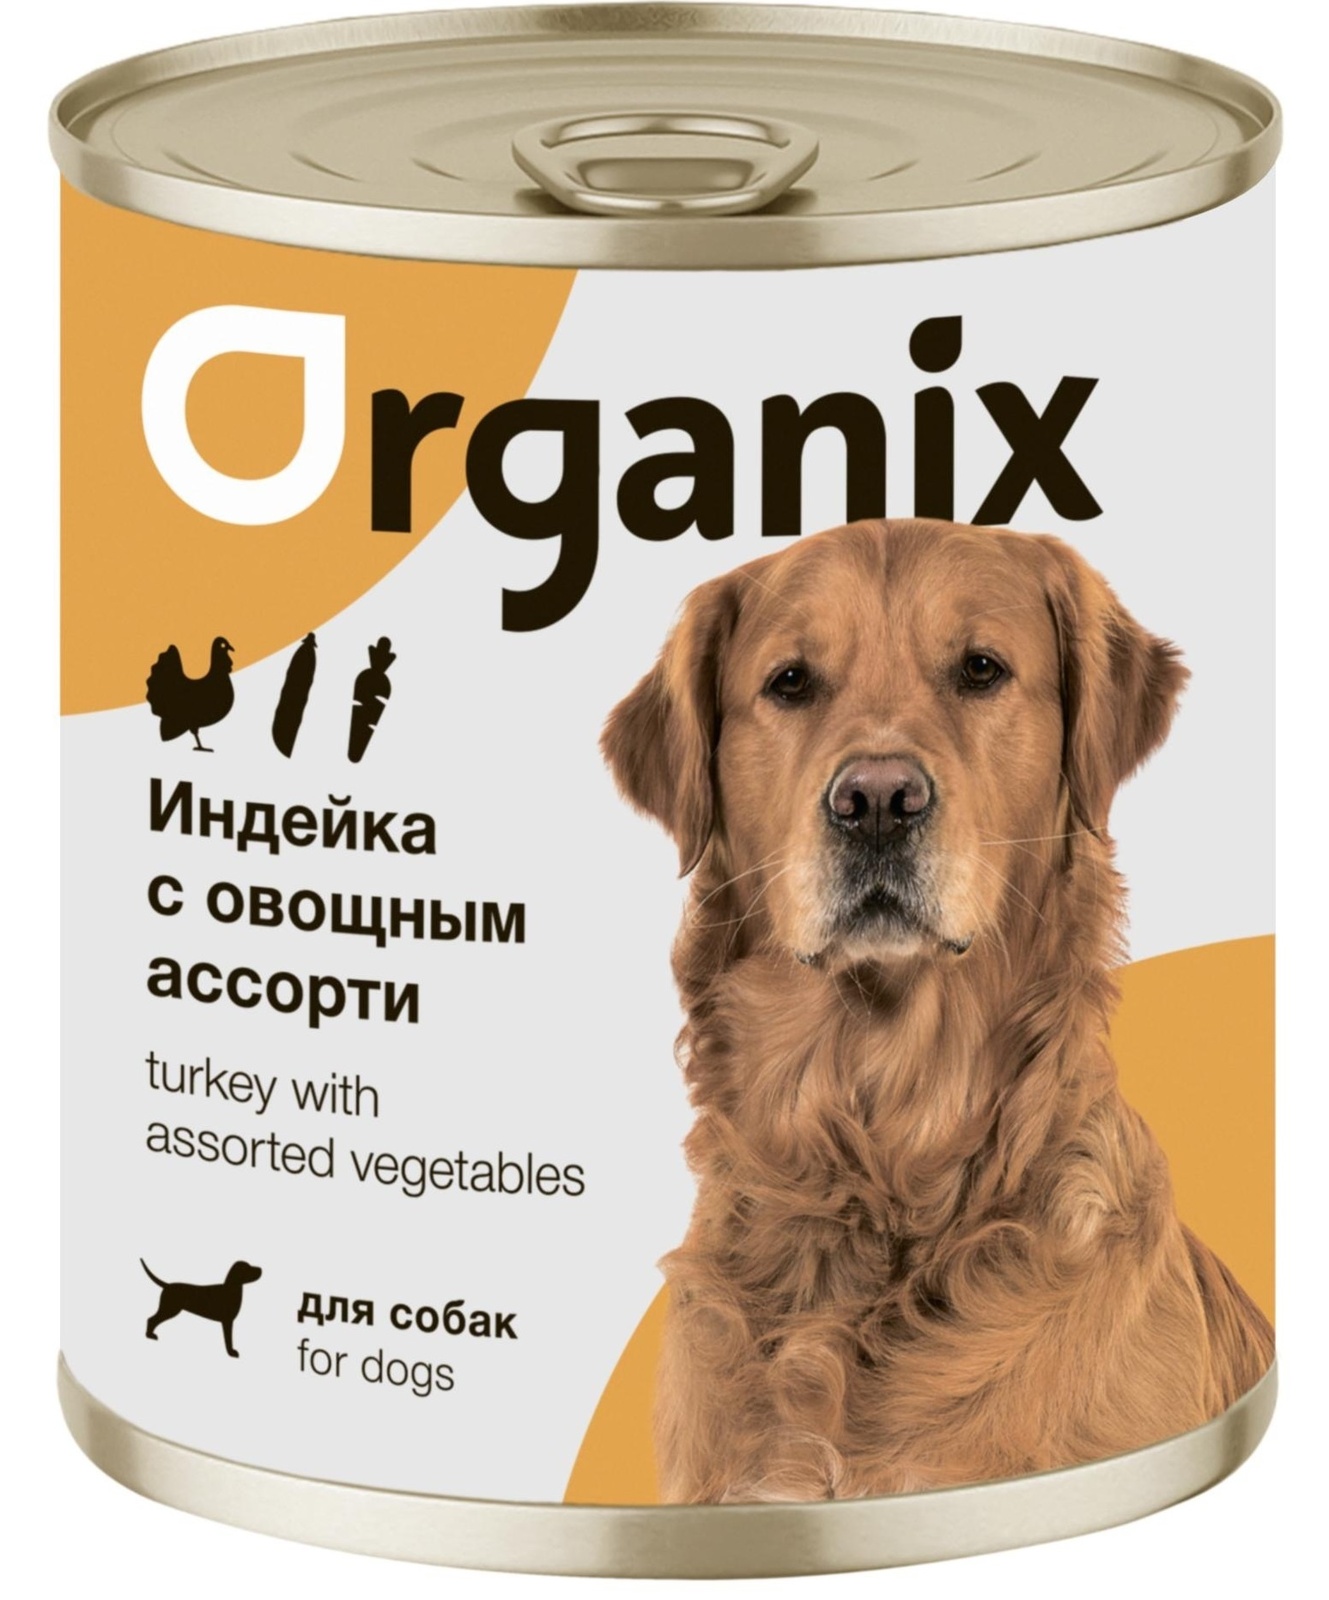 Organix консервы Organix консервы для собак Индейка с овощным ассорти (100 г) organix консервы organix монобелковые премиум консервы для собак с уткой 100 г